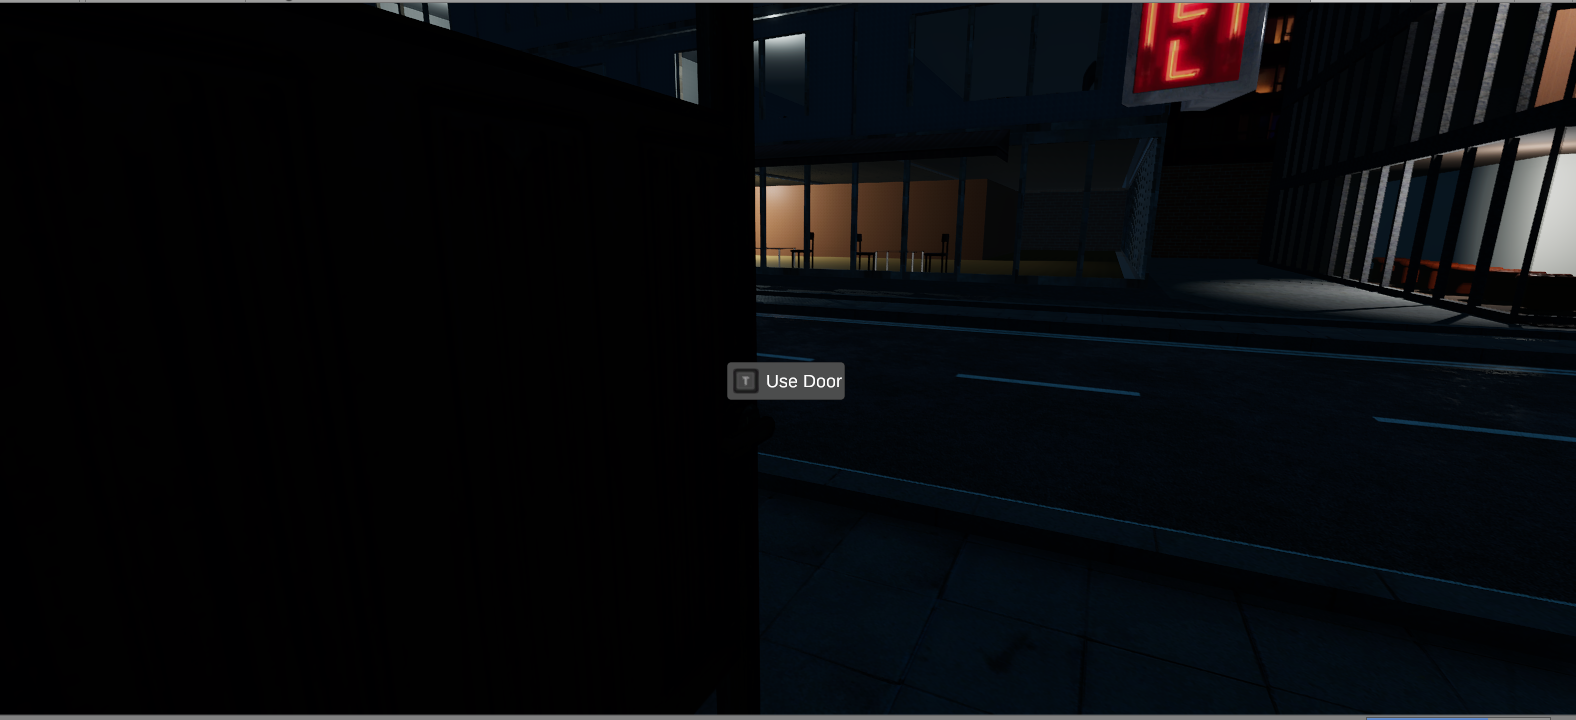 Screenshot with interaction prompt ("Use Door")